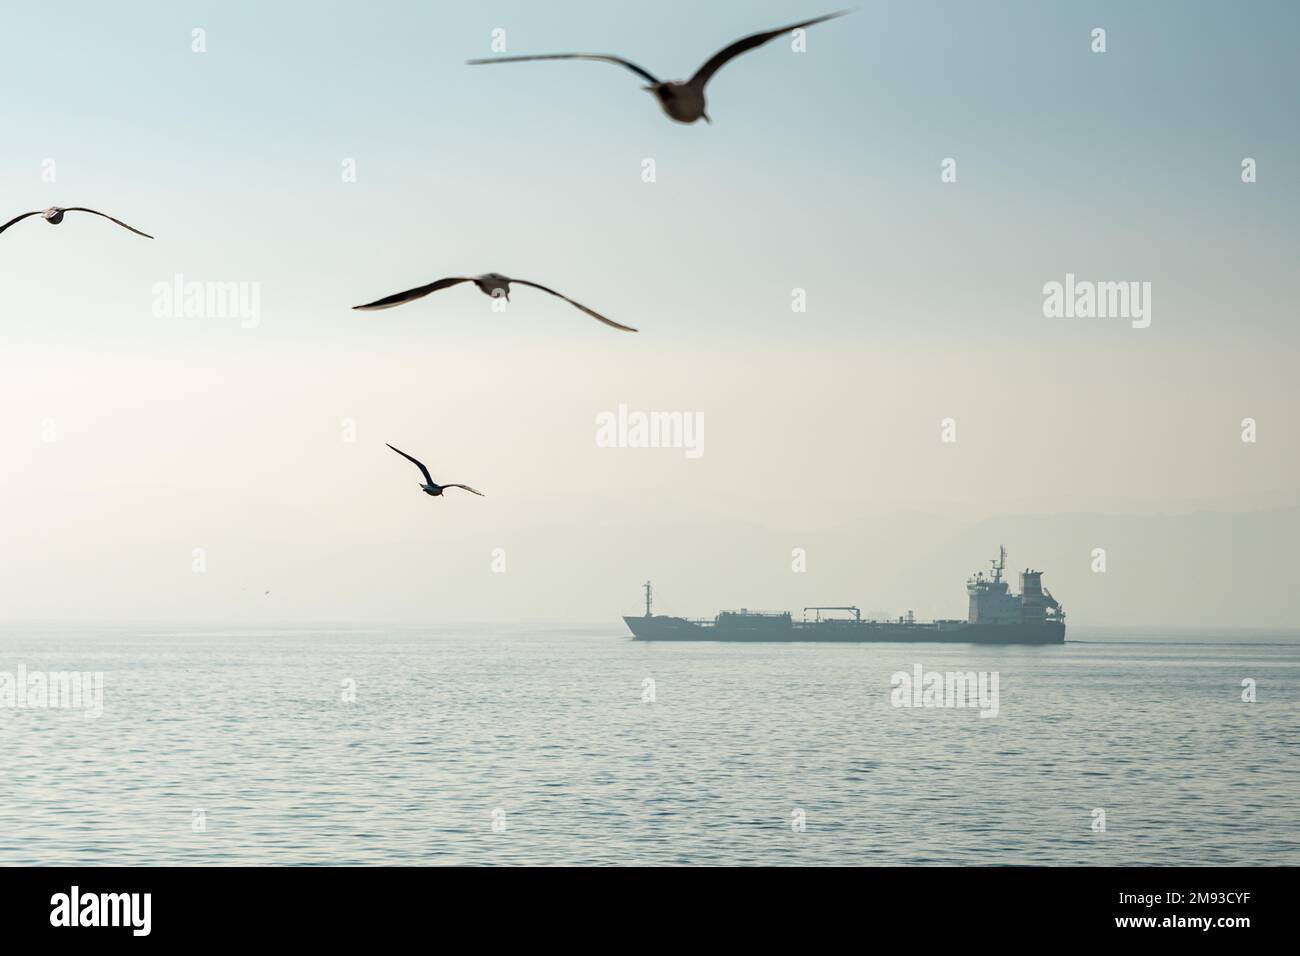 Frachtschiff auf See , Luftaufnahme eines allein fahrenden Frachtschiff auf offener See bei Sonnenaufgang. Vögel, die am Himmel fliegen Stockfoto